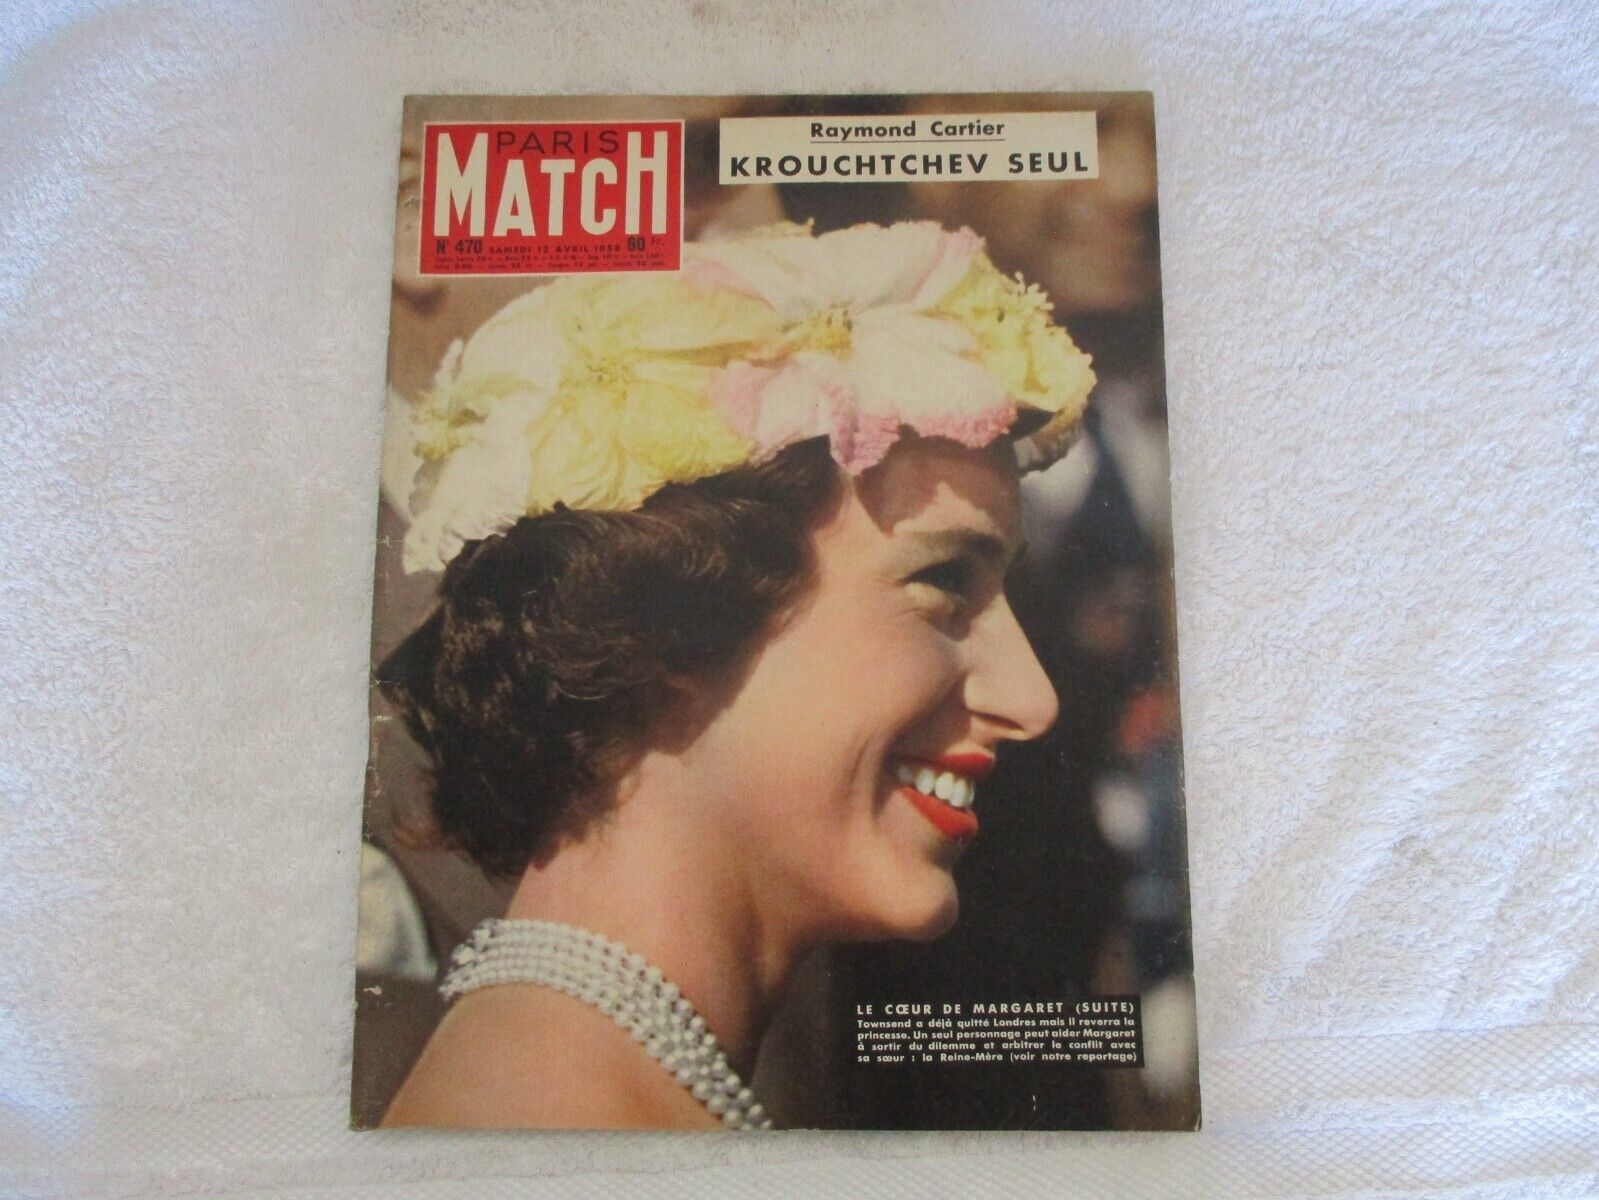 PARIS MATCH N°470 APRIL 1958 LE COEUR DE MARGARET (SUITE) - KRUSHCHEV ALONE